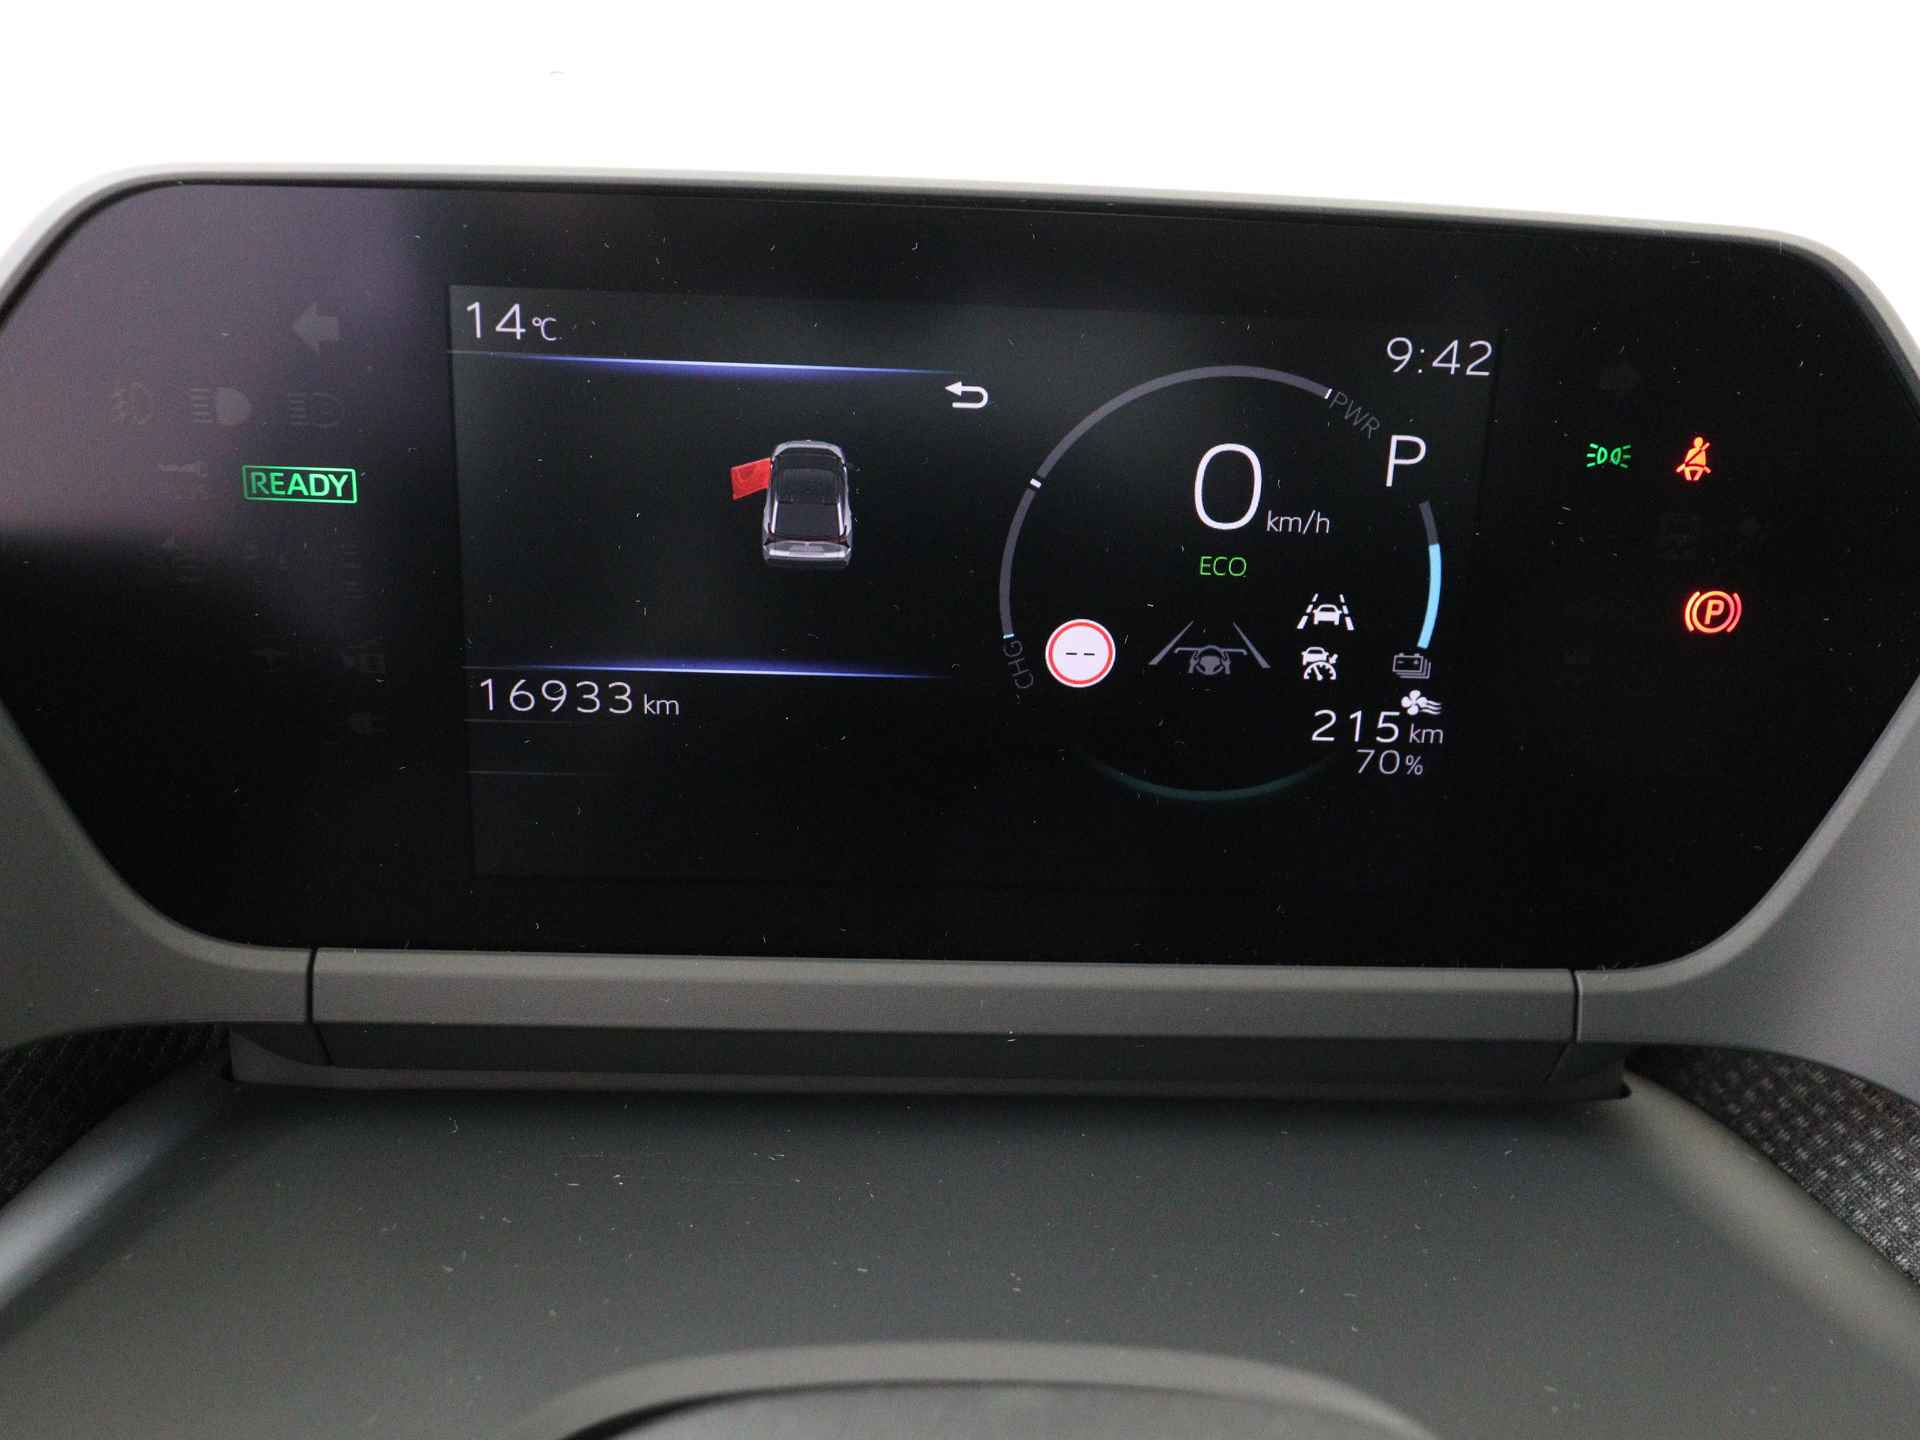 Toyota Bz4x Launch Edition Premium Bi-Tone uitvoering | Navigatie | Stoel&stuur verwarming | My T app | Panoramadak | Wegenbelasting vrij | Subsidie €2000,- aanvraag mogelijk. - 6/48